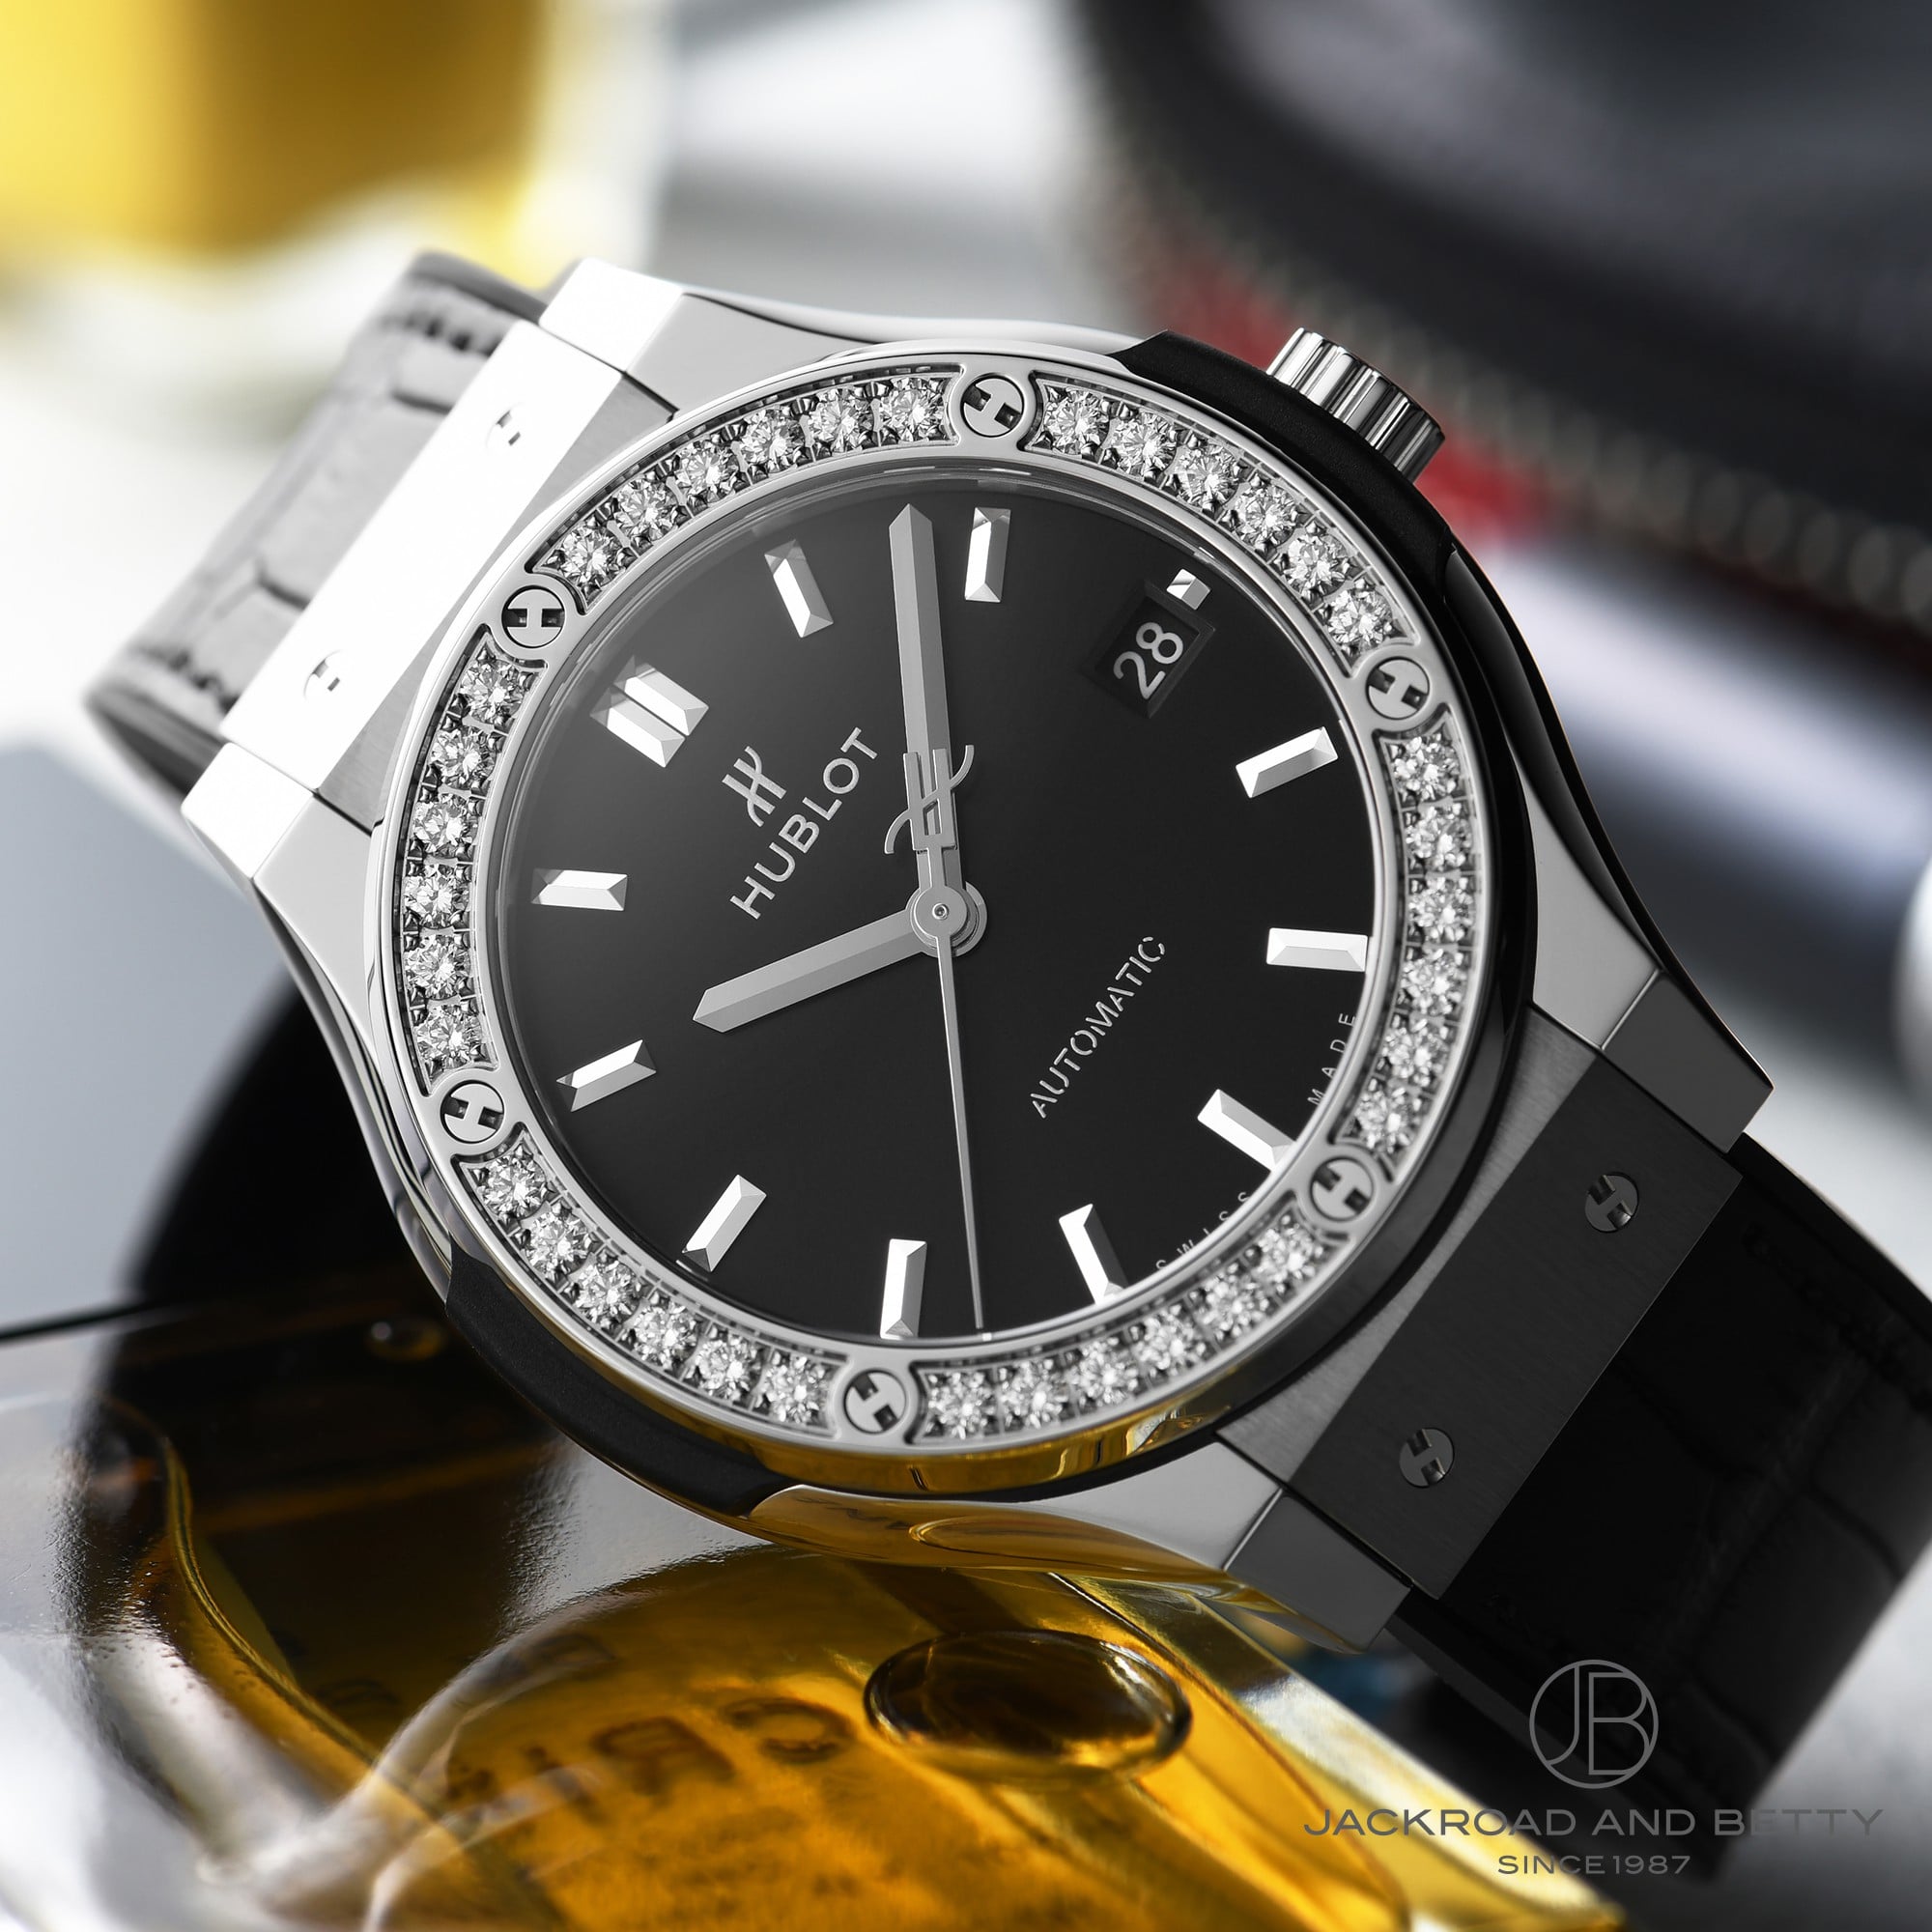 ウブロ クラシックフュージョン チタニウム ダイヤモンド 565.NX.7170.LR.1204 HUBLOT 腕時計